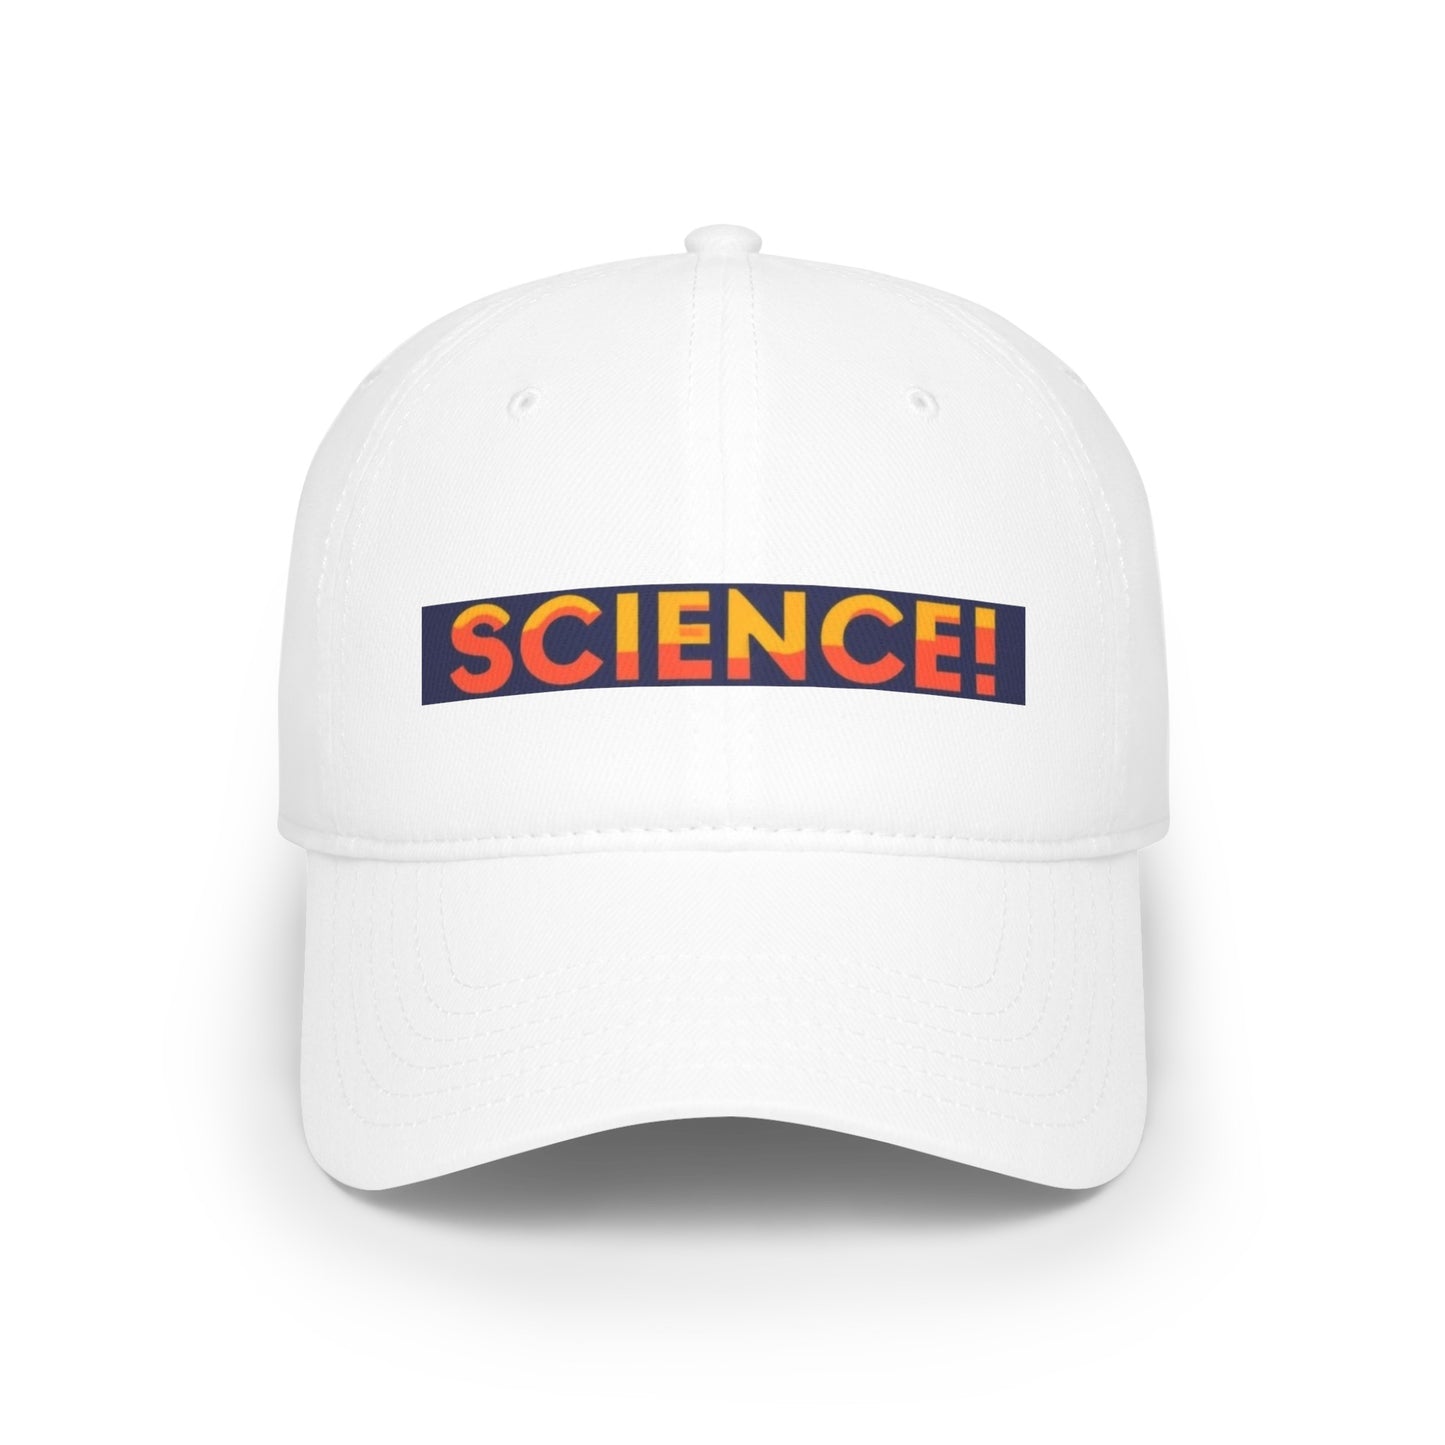 SCIENCE! Low Profile Baseball Cap